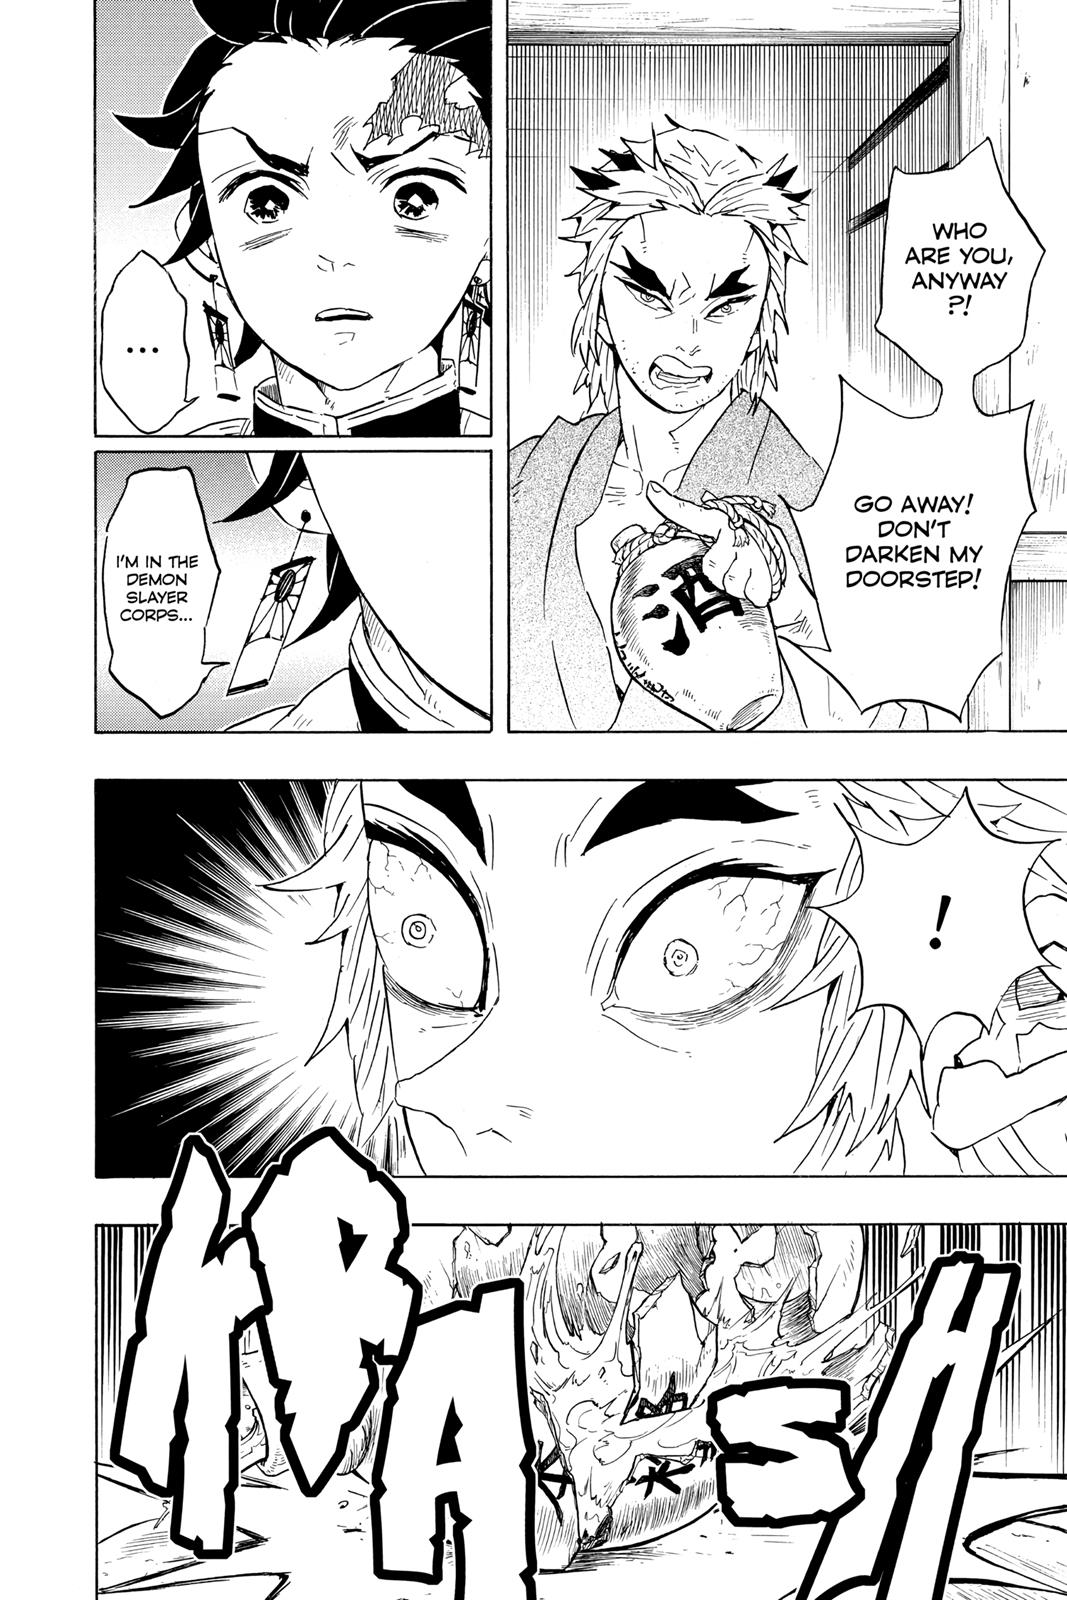 Demon Slayer Manga Manga Chapter - 68 - image 4